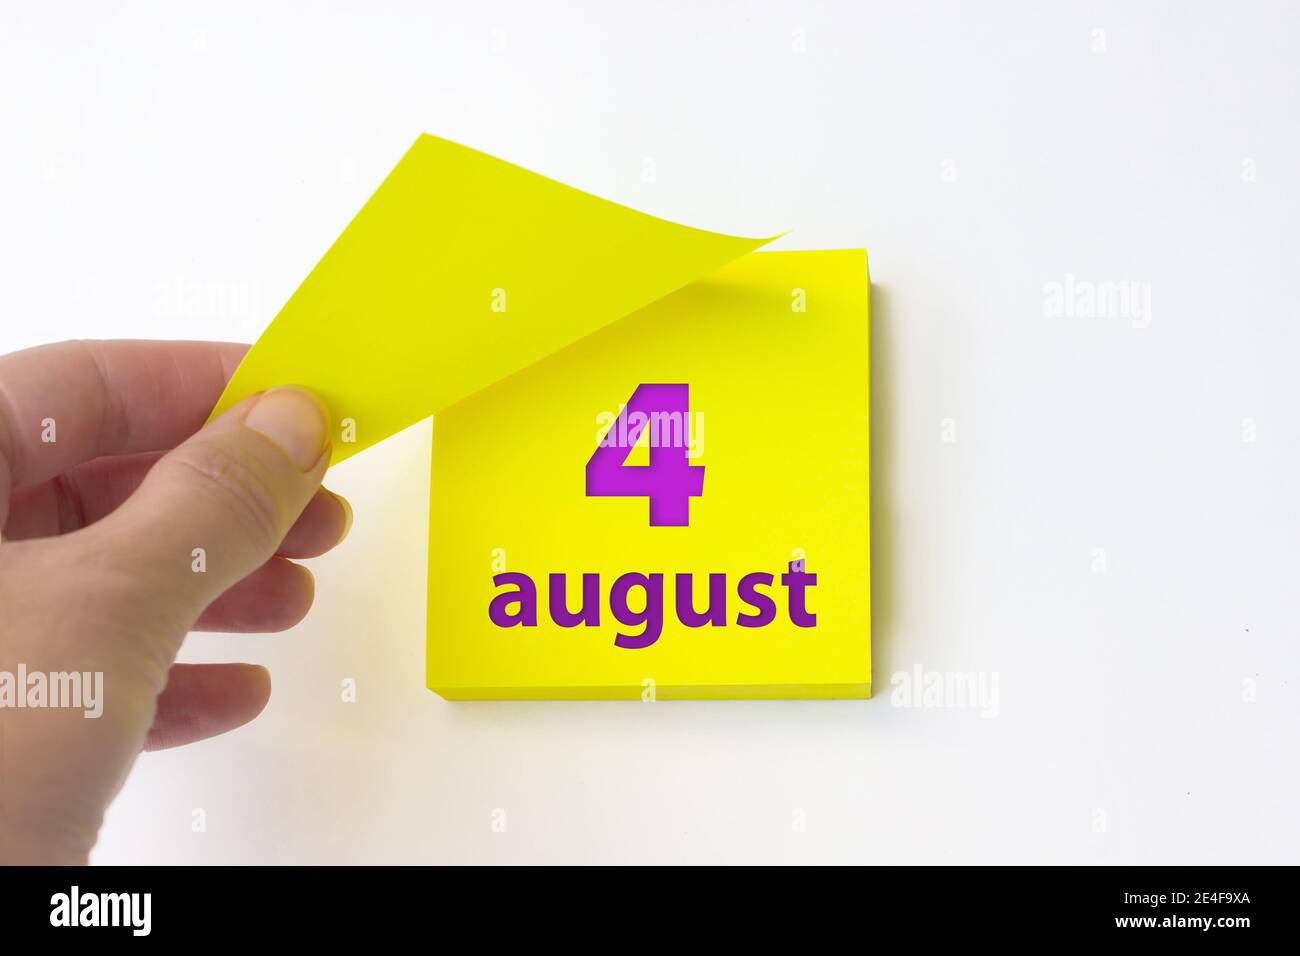 4 août. Jour 4 du mois, date du calendrier. La main se défait de la feuille jaune du calendrier. Concept mois d'été, jour de l'année Banque D'Images